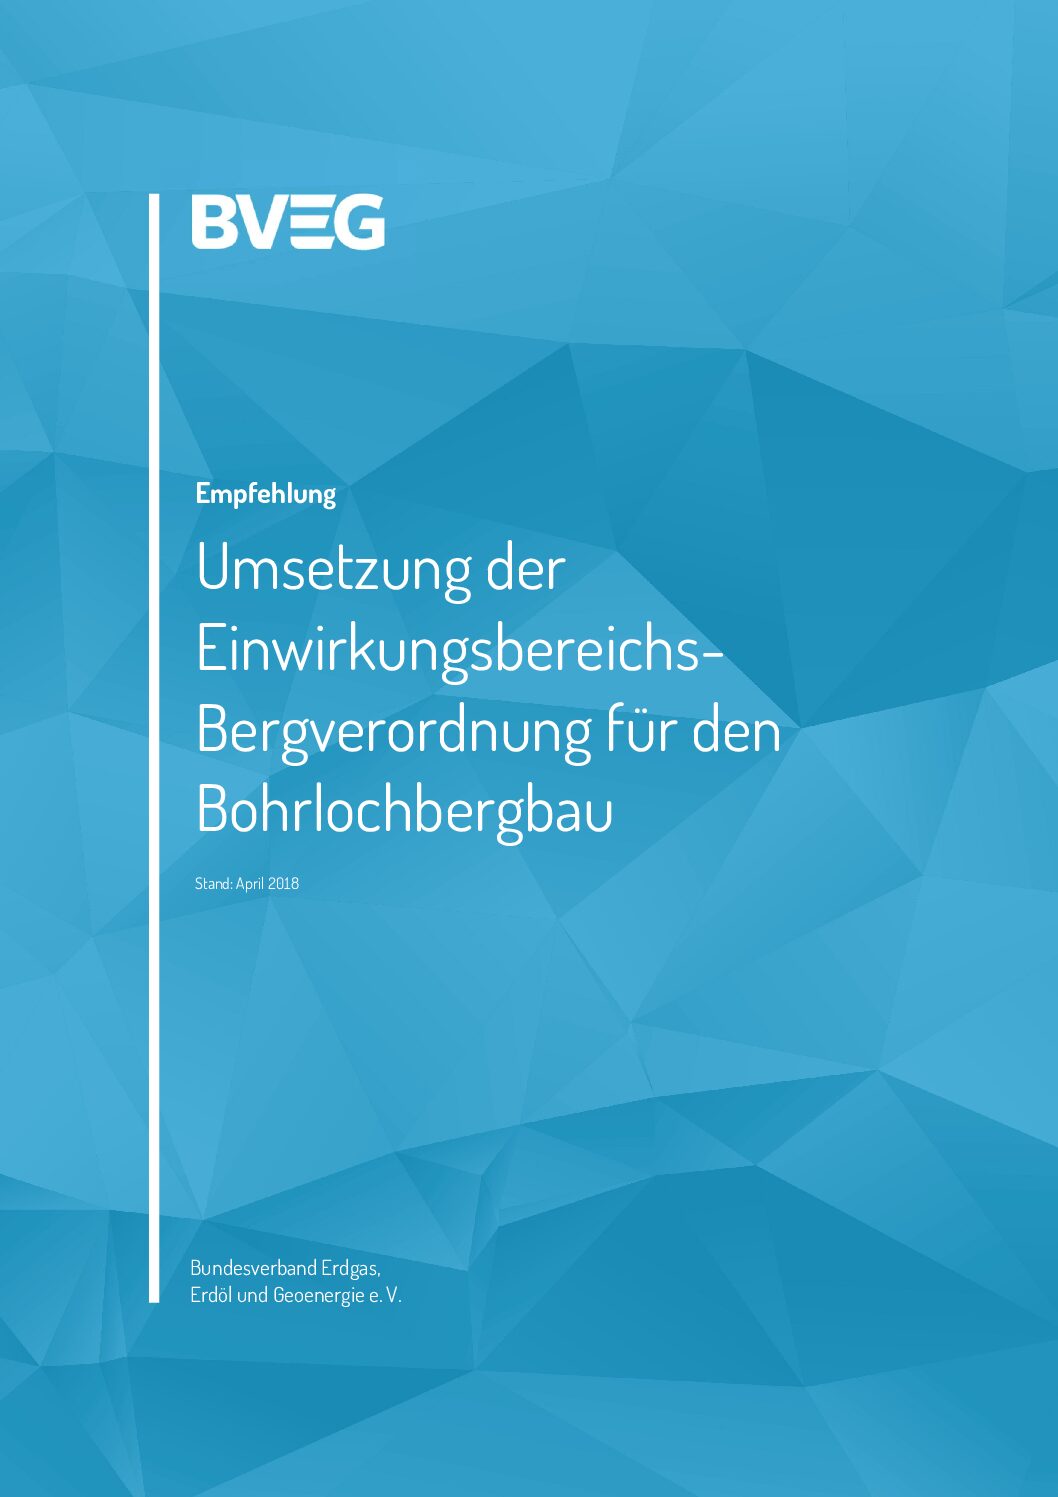 BVEG Empfehlung Umsetzung Einwirkungsbereichs Bergverordnung